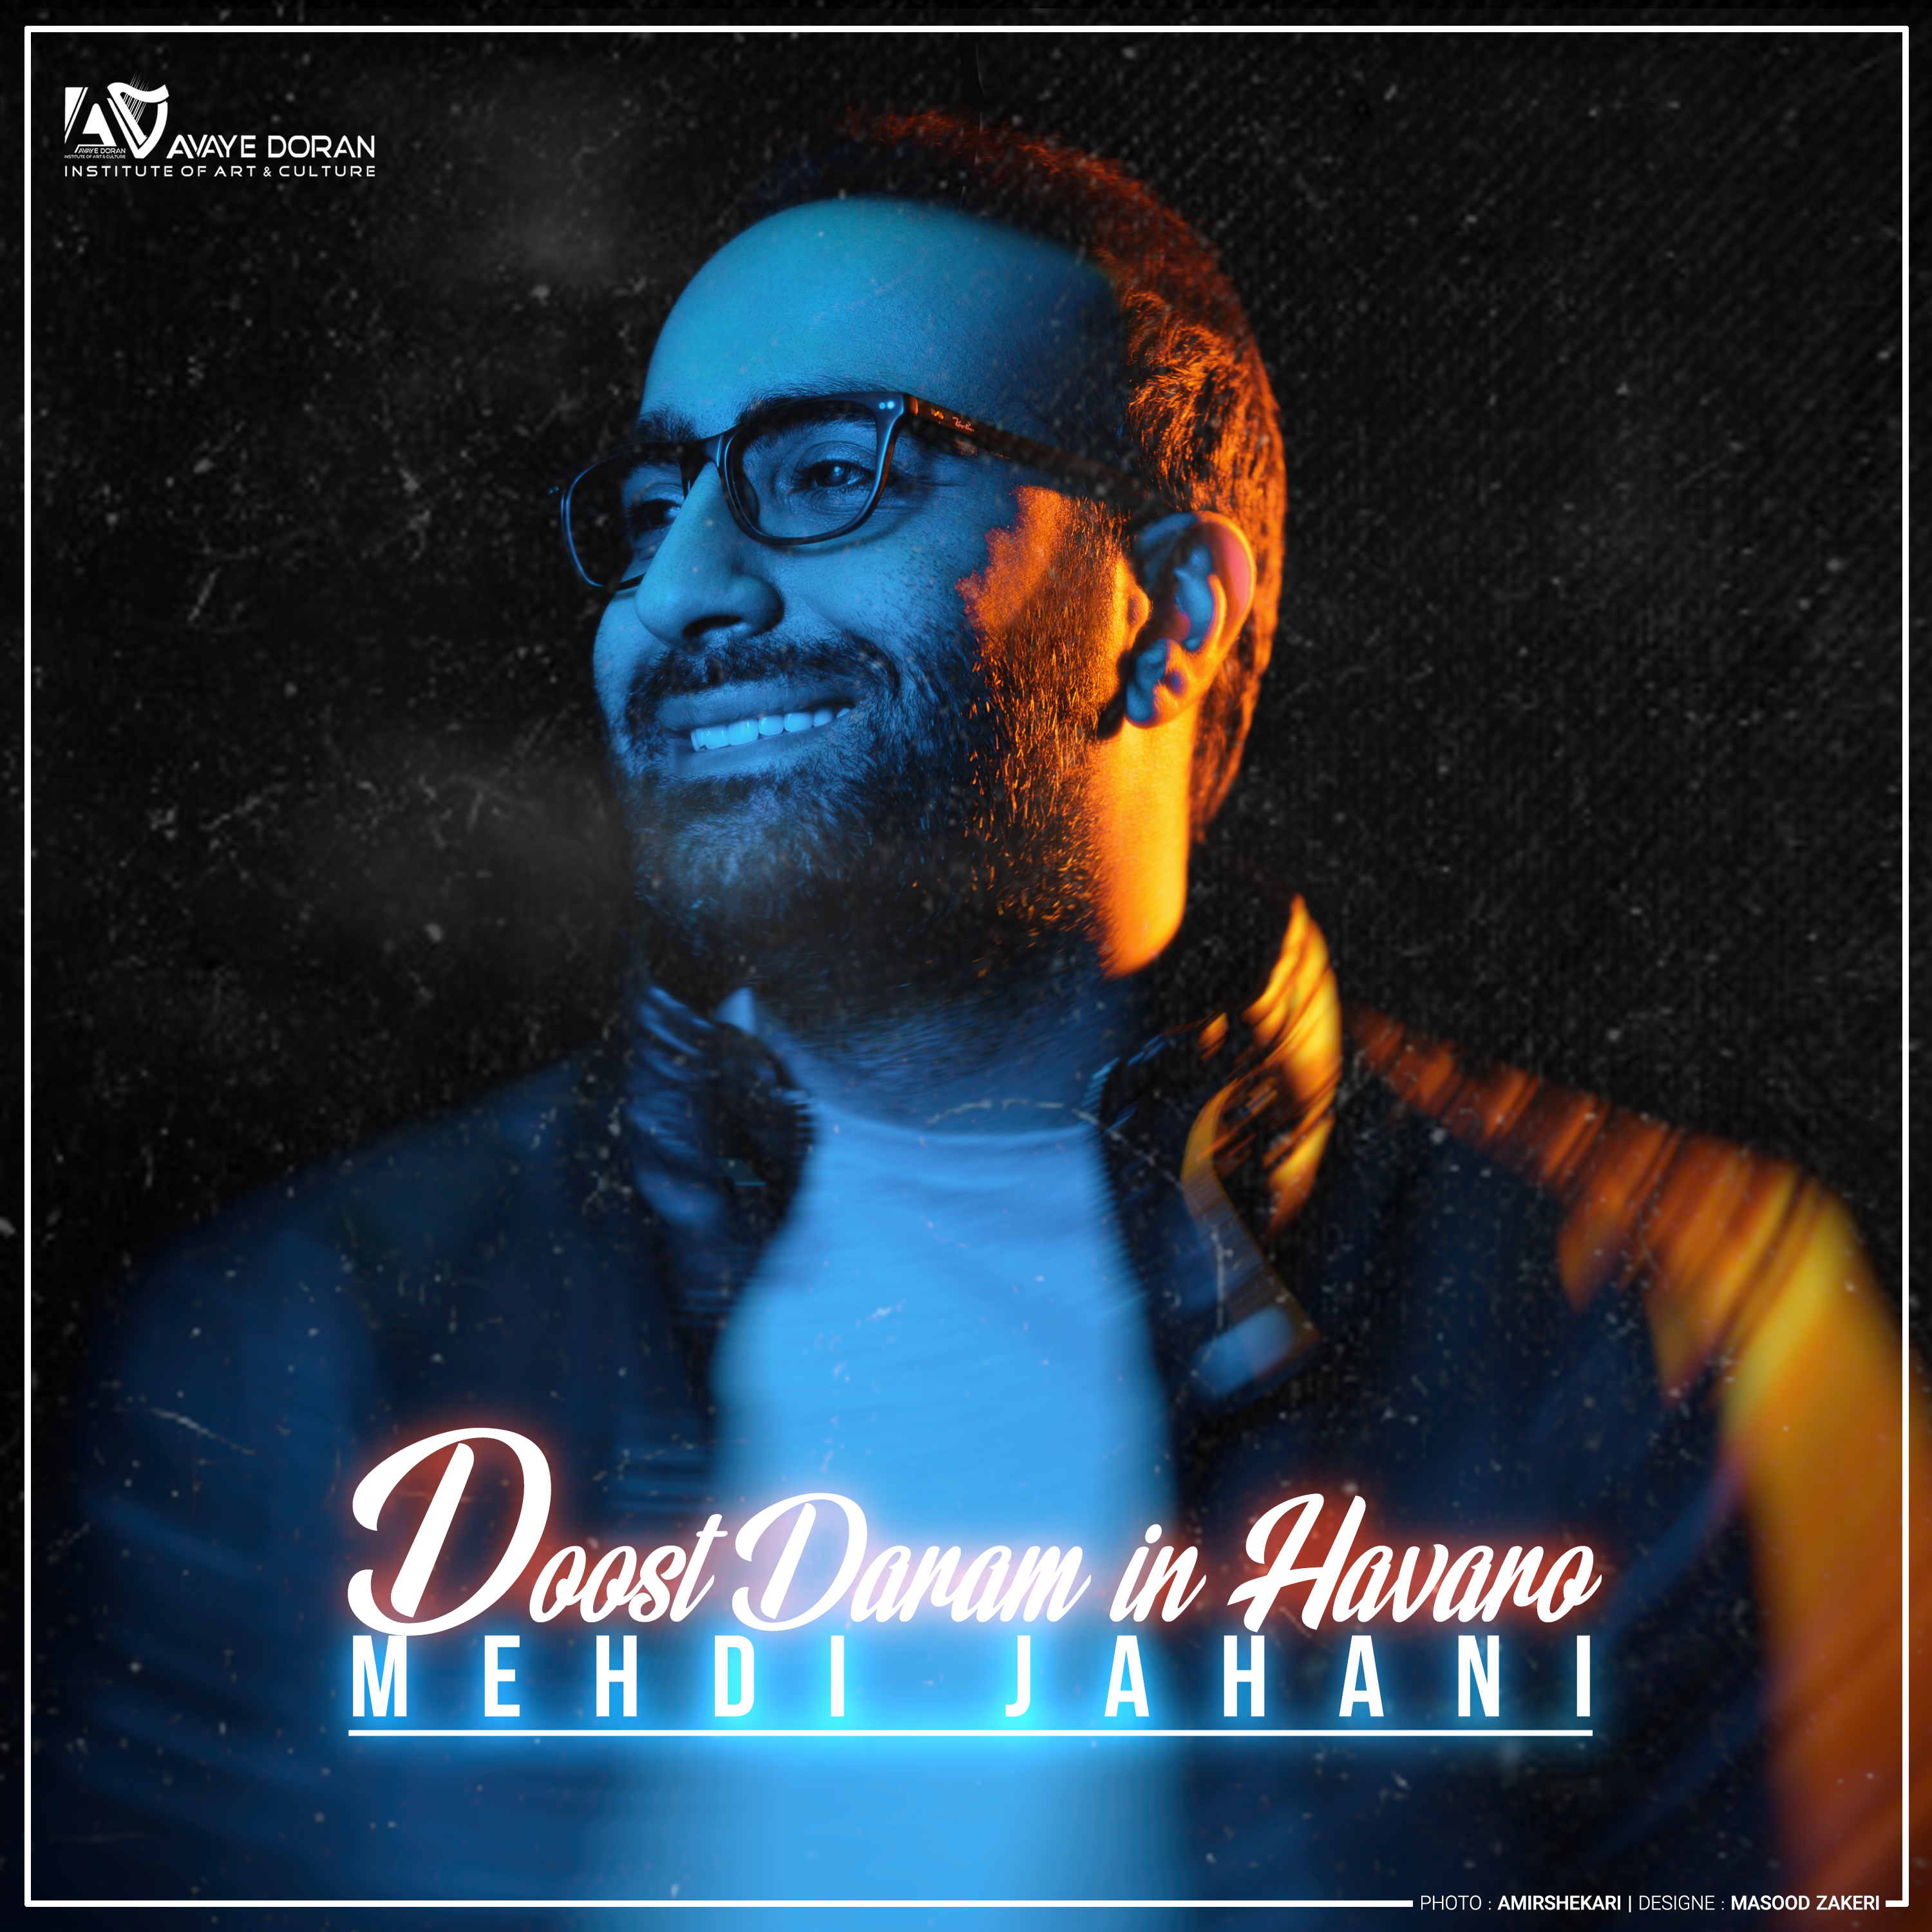  دانلود آهنگ جدید مهدی جهانی - دوست دارم این هوارو | Download New Music By Mehdi Jahani - Doost Daram In Havaro